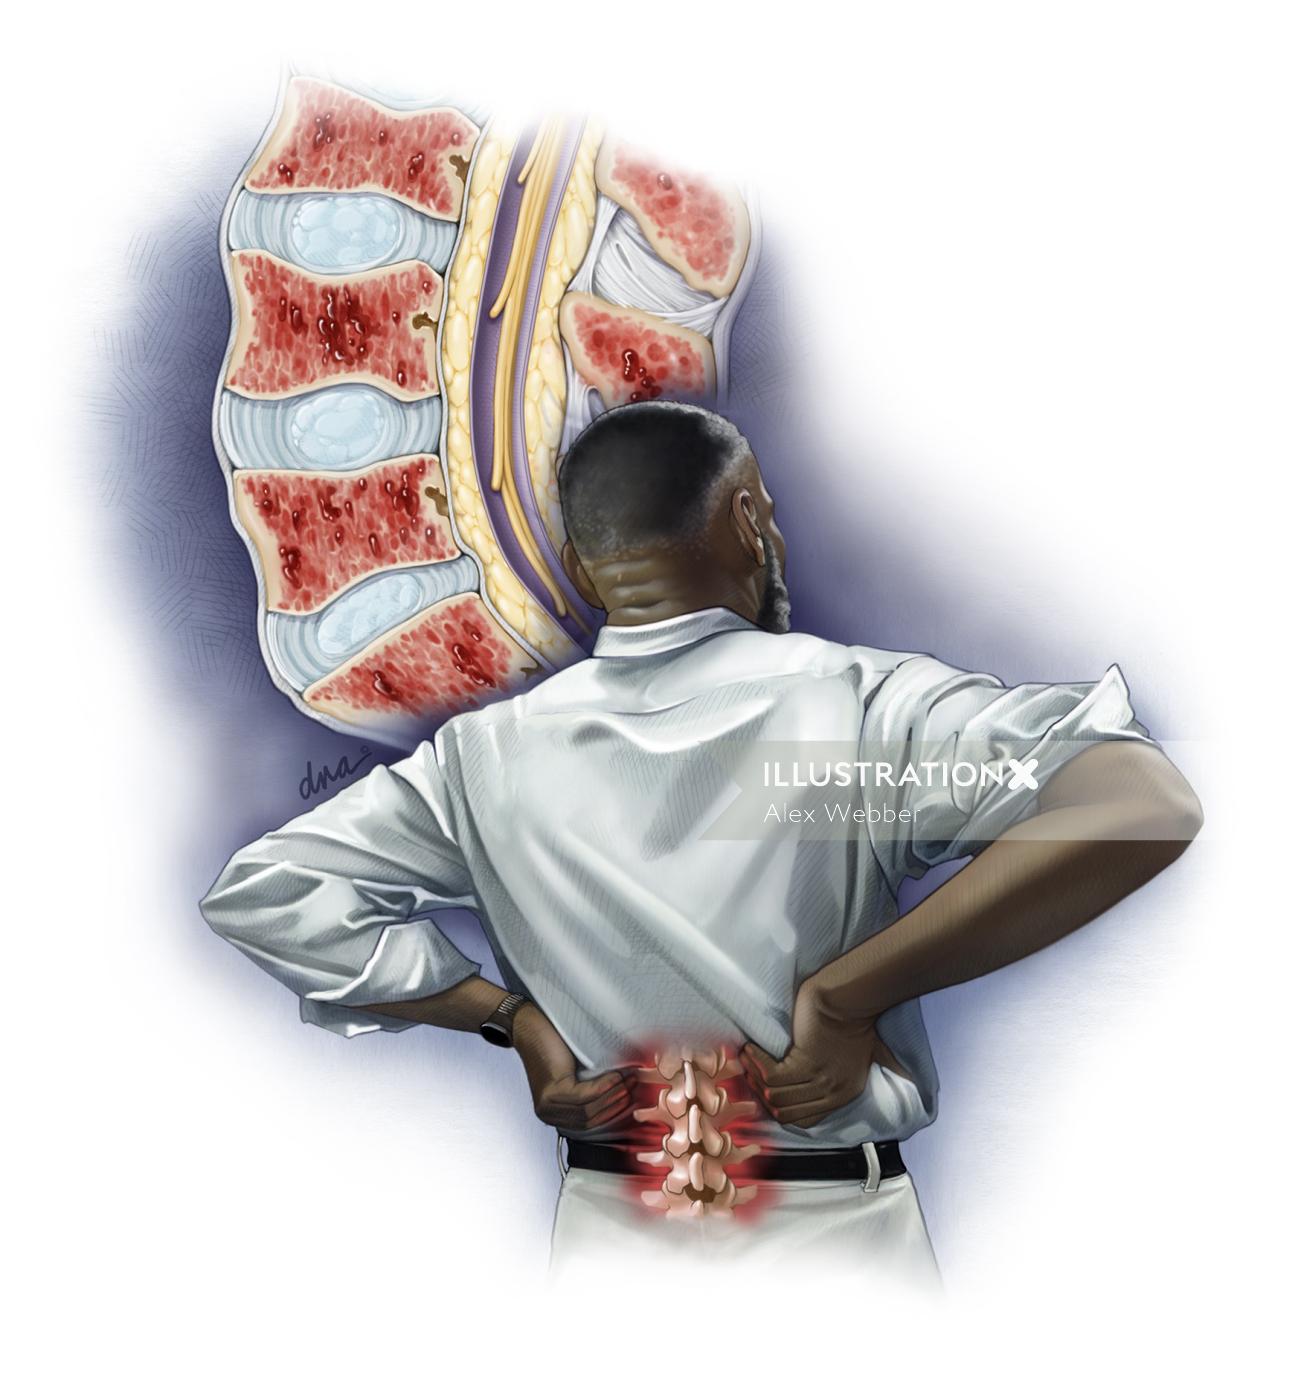 Ilustração médica sobre paciente com mieloma múltiplo com dor nas costas